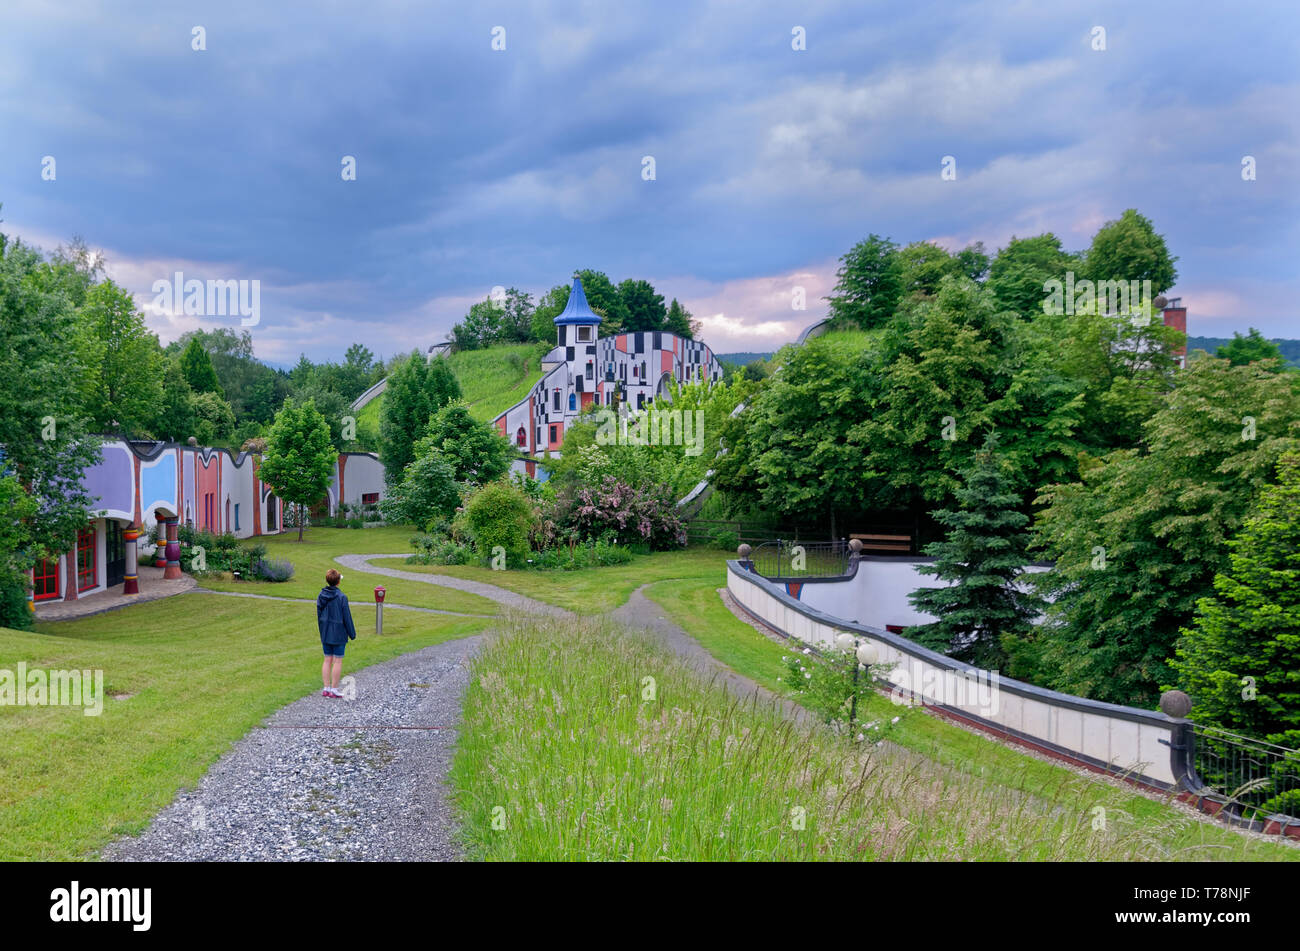 Admirant l'artistique, l'architecture fantaisiste à rogner Bad Blumau, Autriche, un resort ou hôtel spa conçu par Friedensreich Hundertwasser Banque D'Images